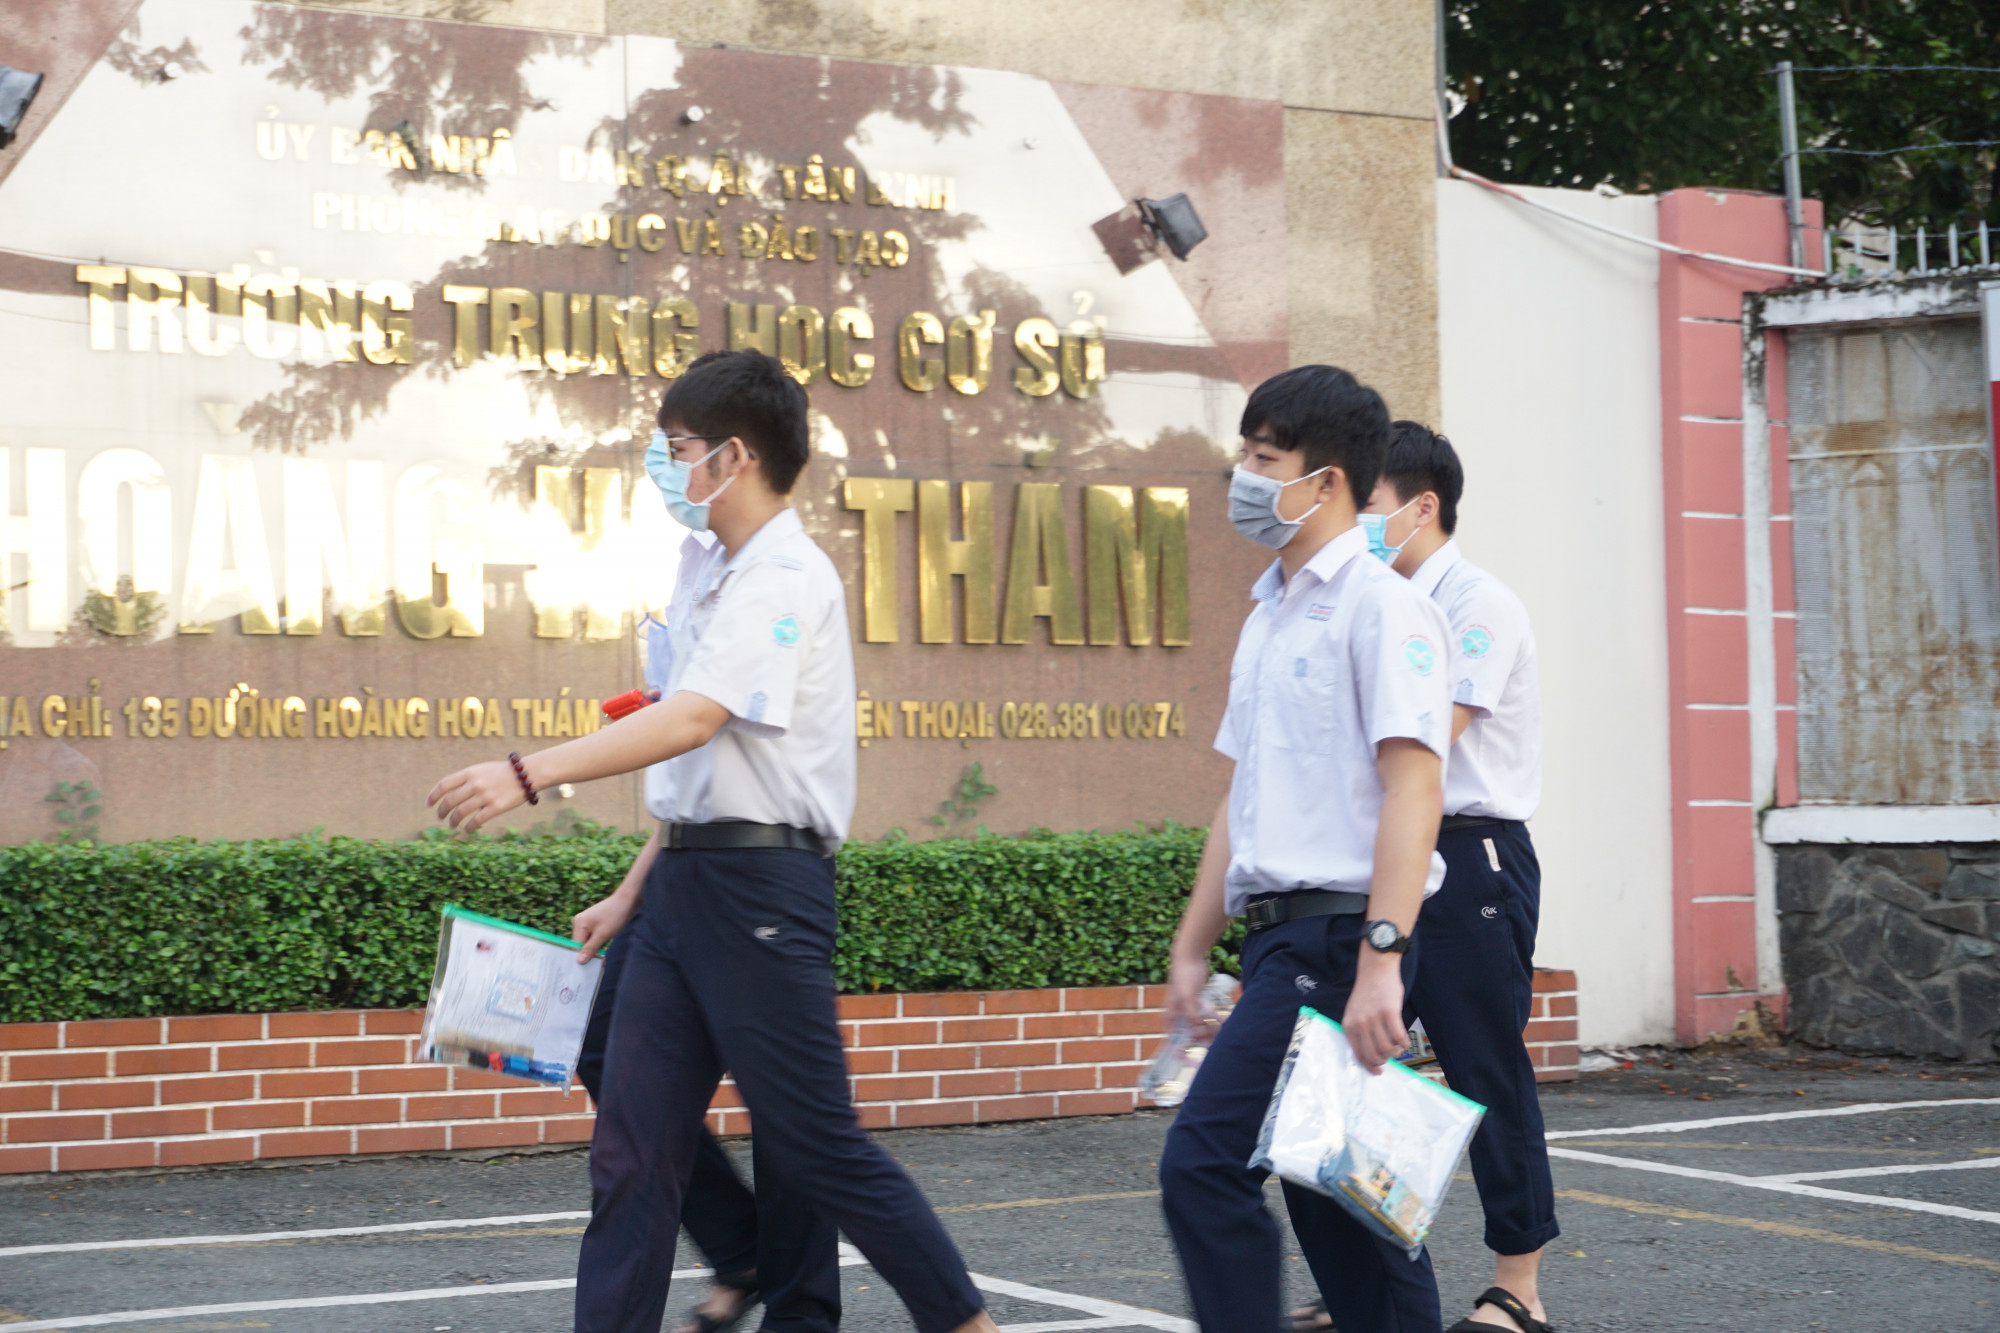 Chỉ mới 6 giờ sáng, tại điểm thi trường THCS Hoàng Hoa Thám, quận Tân Bình, các thí sinh đã có mặt để chuẩn bị bước vào môn thi đầu tiên là Ngữ văn với hình thức thi tự luận gồm 2 phần đọc hiểu và làm văn, kéo dài 120 phút.